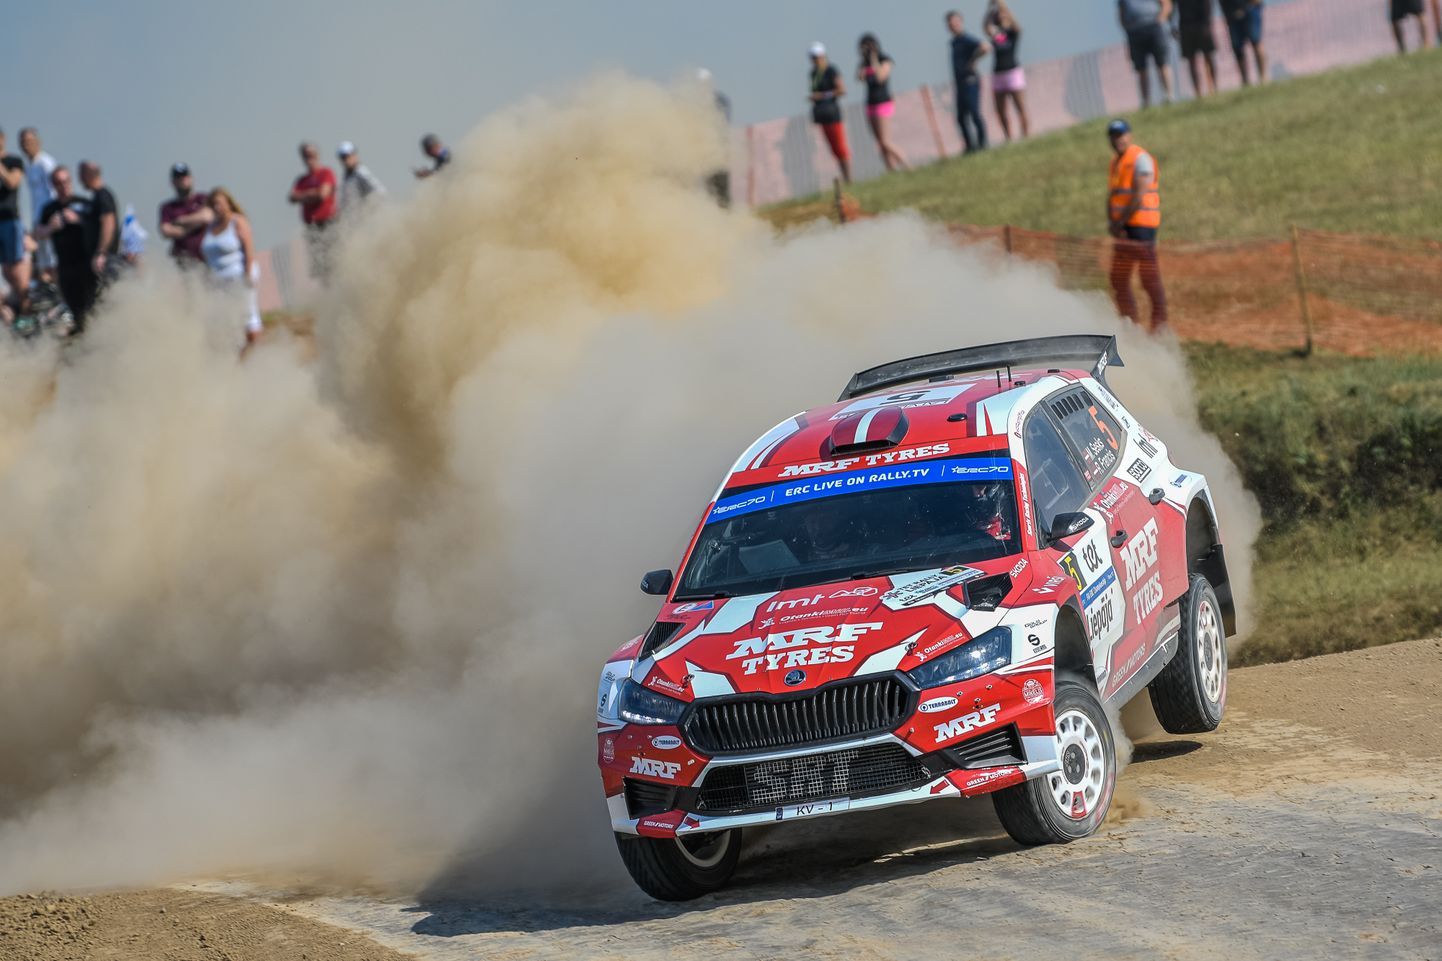 Rallija braucējs Mārtiņš Sesks piedalās Eiropas rallija čempionāta (ERC) sezonas ceturtā posma "Tet Rally Liepāja" kvalifikācijas braucienā Liepājā.